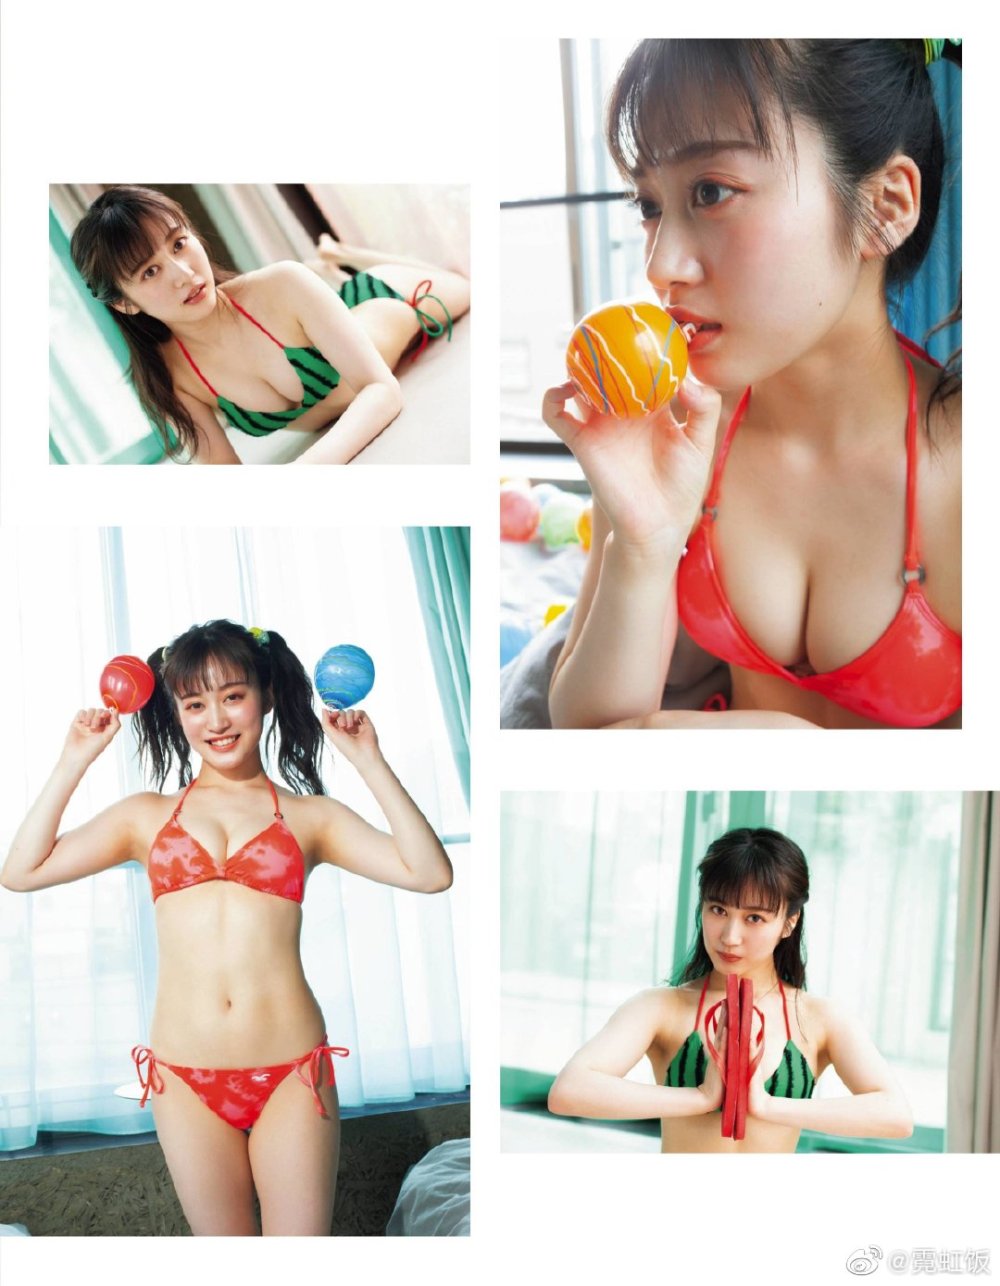 川上千寻 Sexy and Hottest Photos , Latest Pics